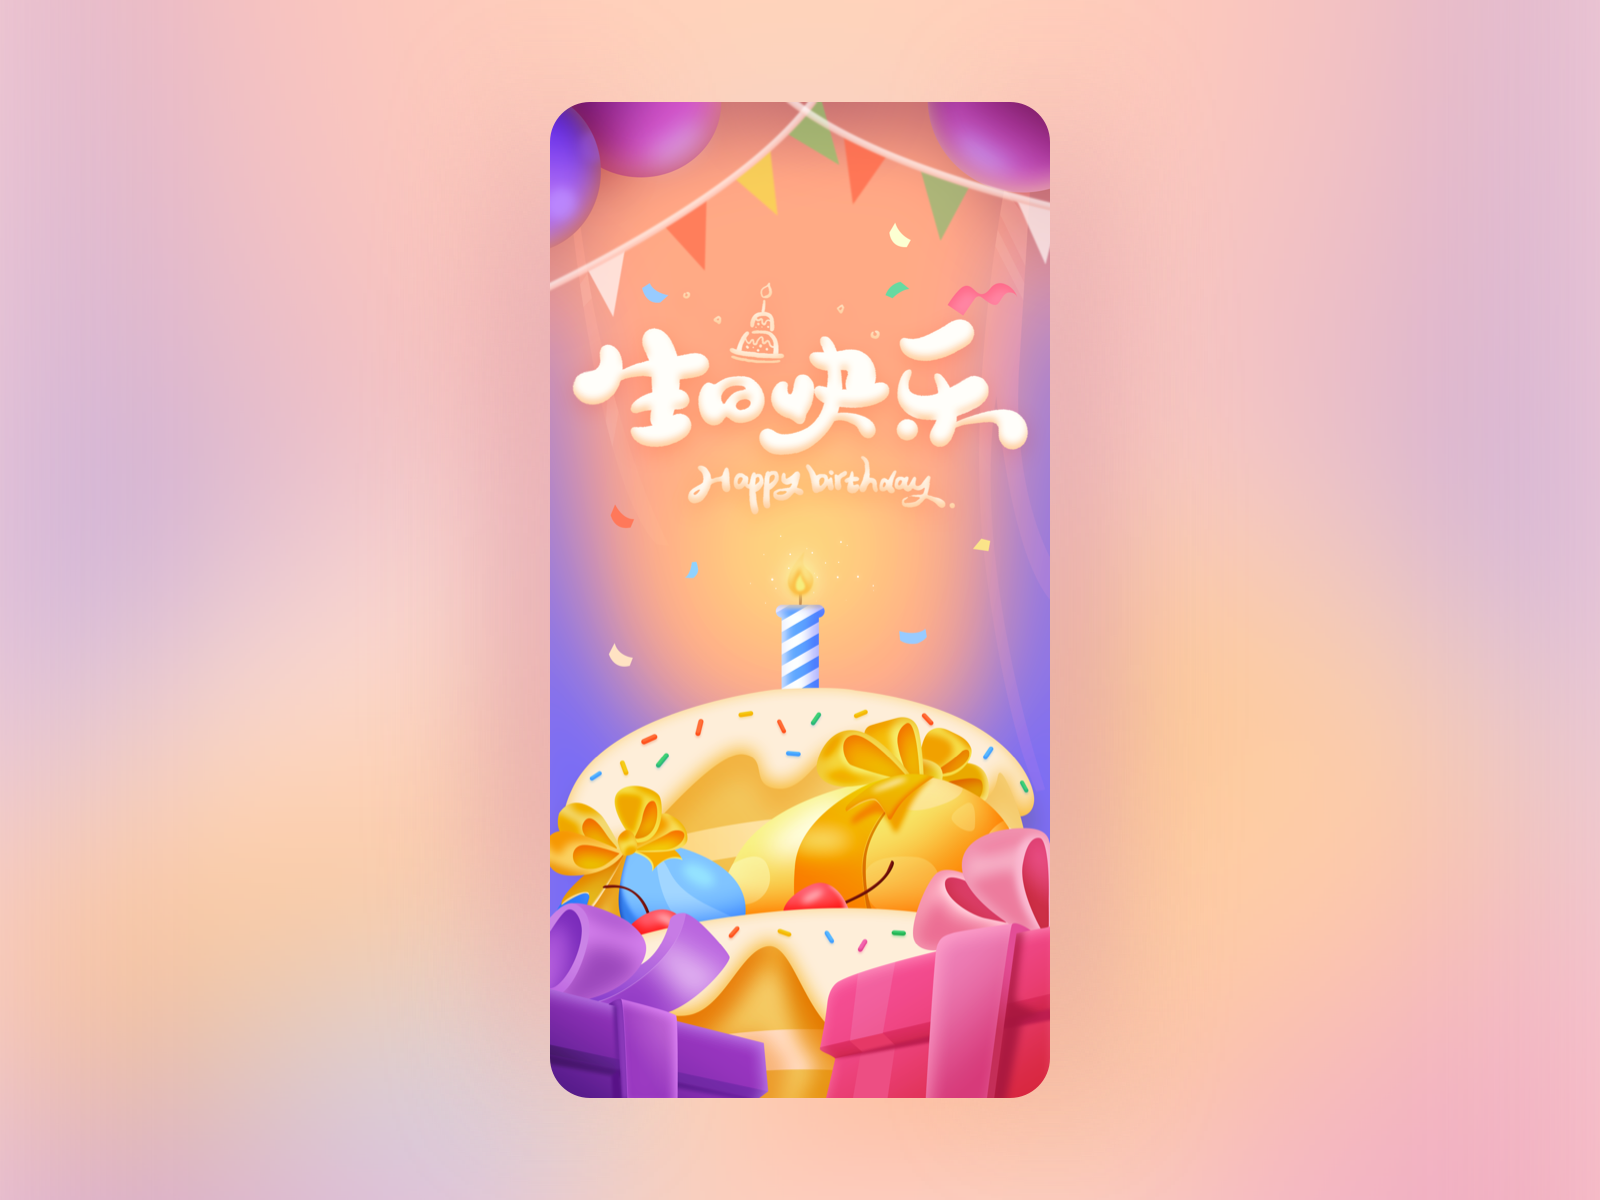 Birthday 100days birthday birthday cake cake design happy birthday illustration 插画 生日 生日快乐 生日蛋糕 蛋糕